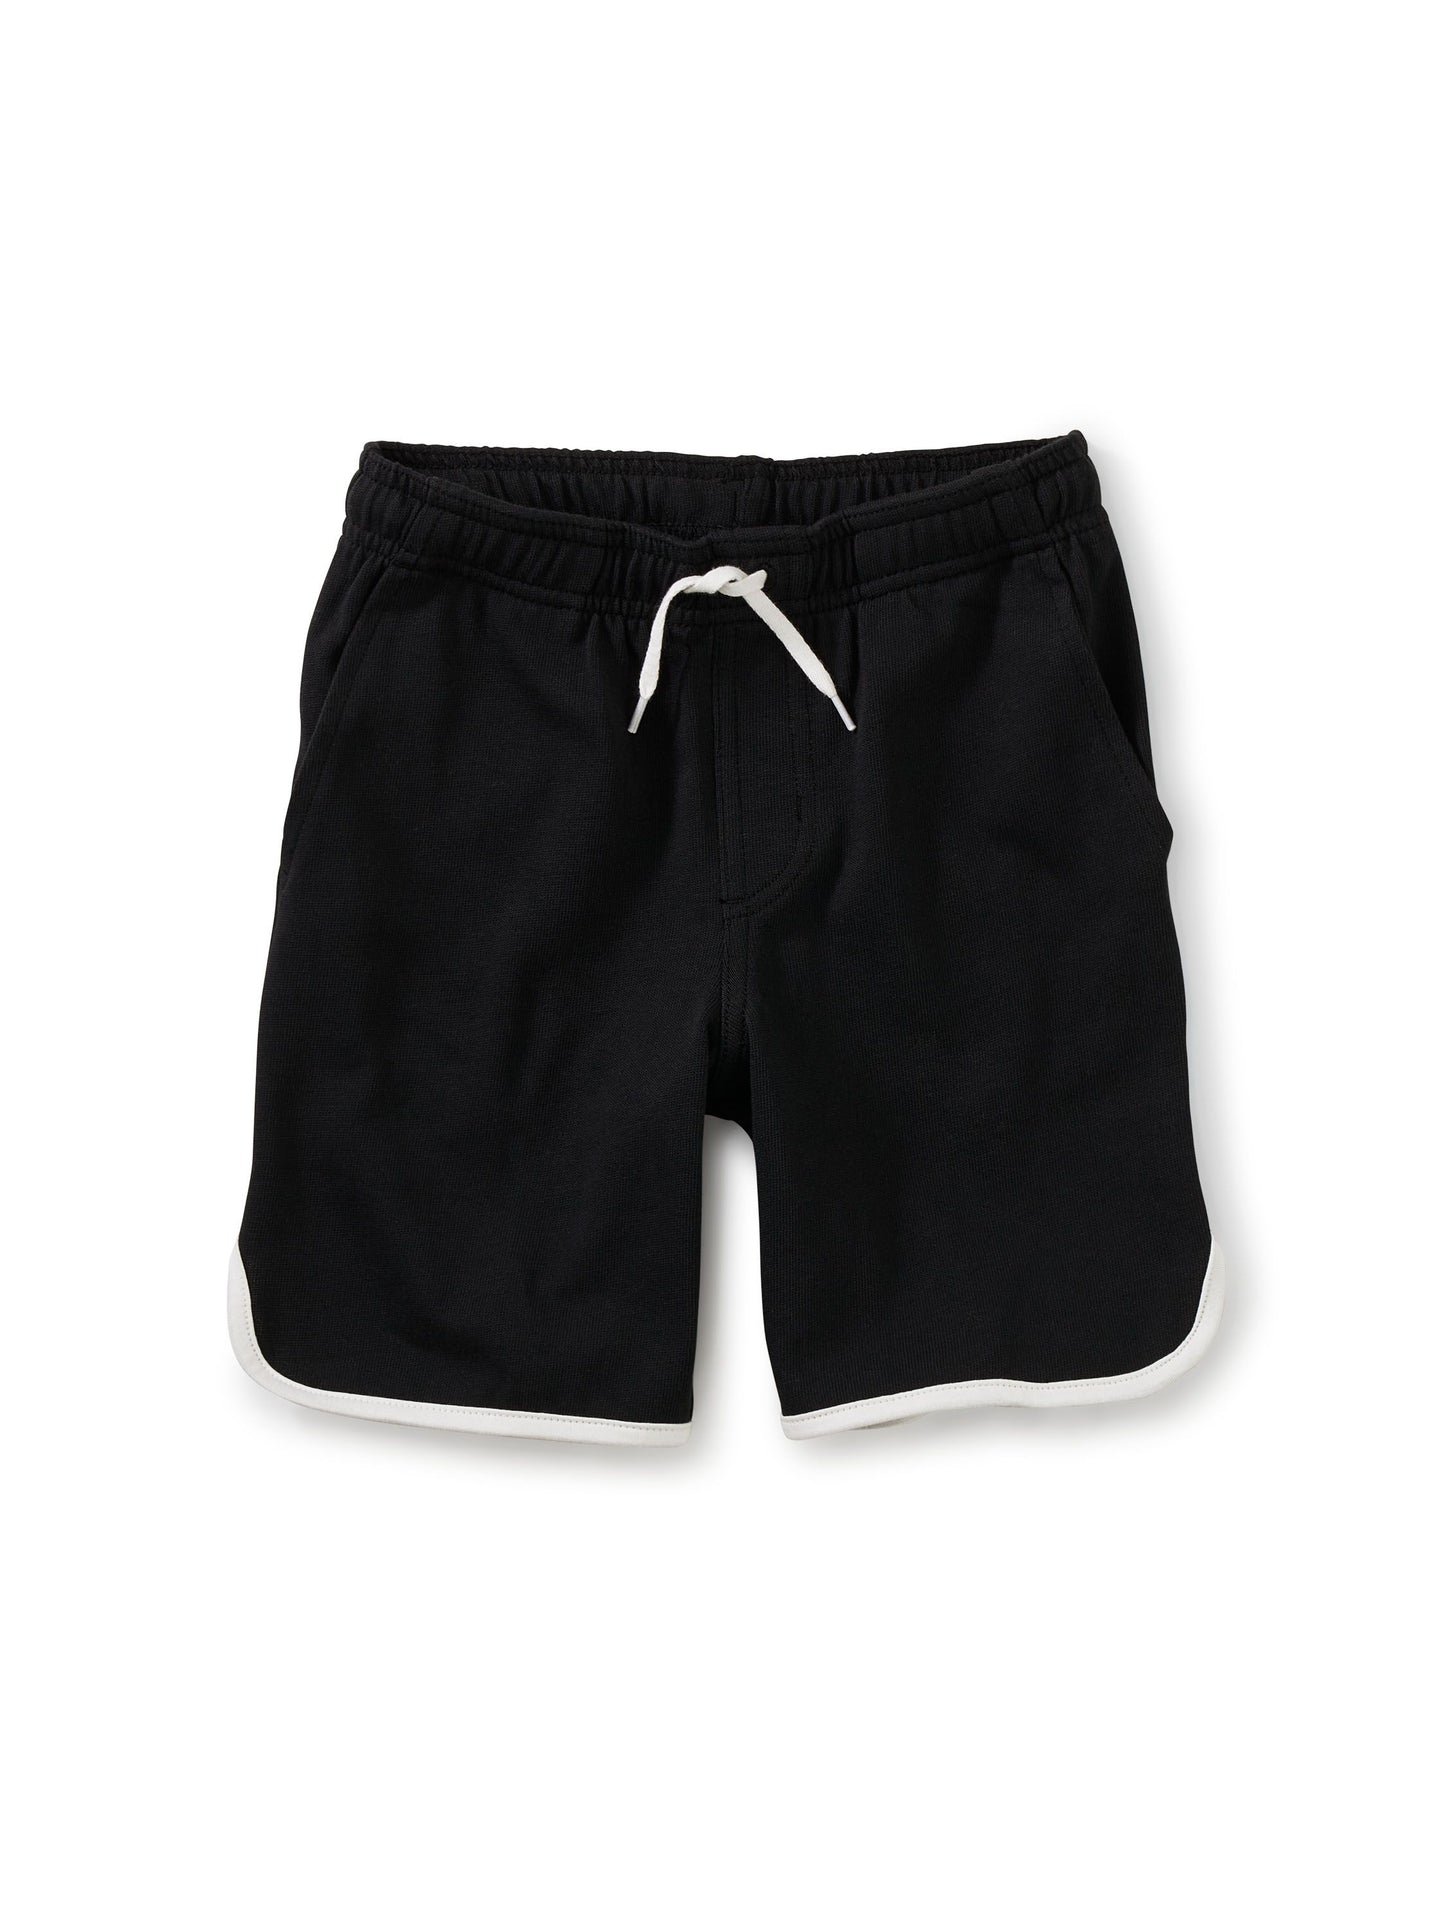 Ringer Shorts - Jet Black